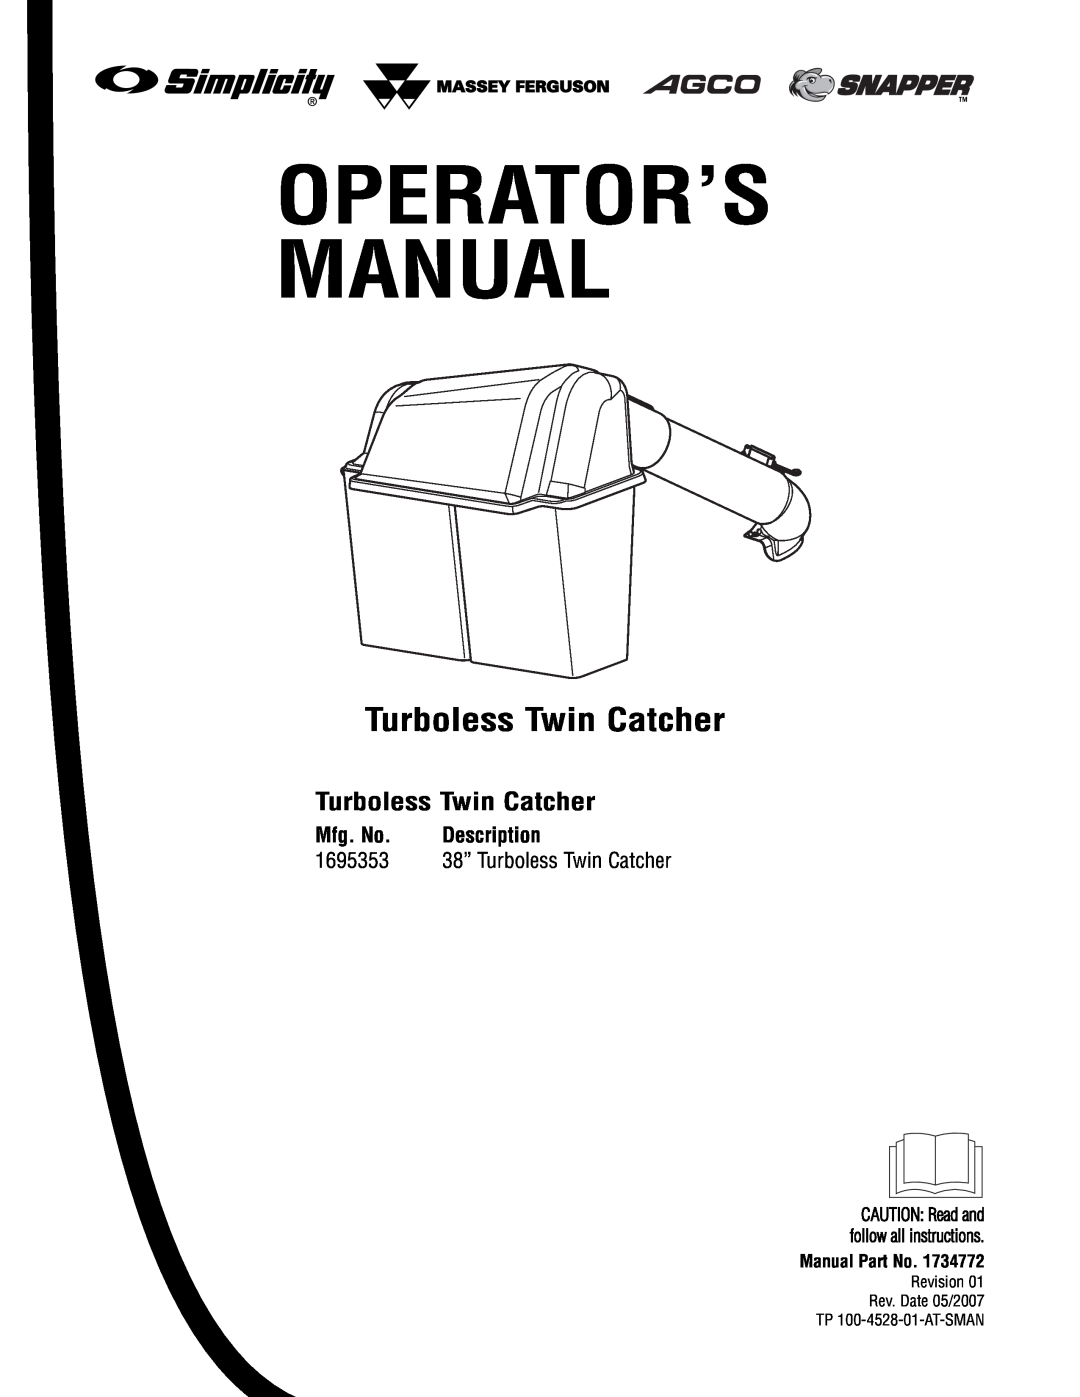 Briggs & Stratton 1695353 manual Turboless Twin Catcher, Mfg. No, Description, Operator’S Manual 